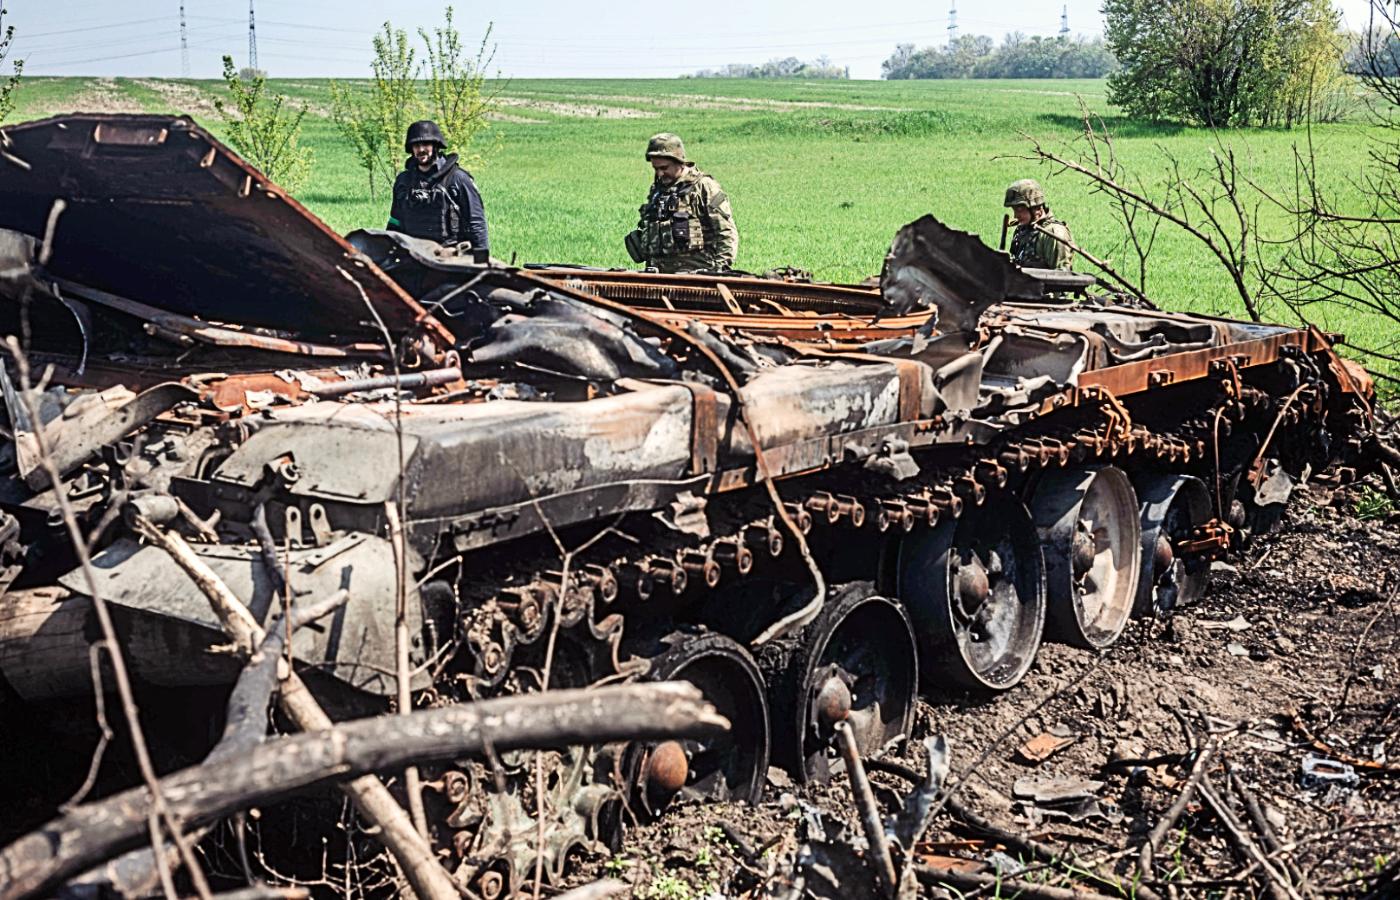 Ukraińscy żołnierze obok zniszczonego rosyjskiego czołgu. Okolice Charkowa, maj 2022 r.